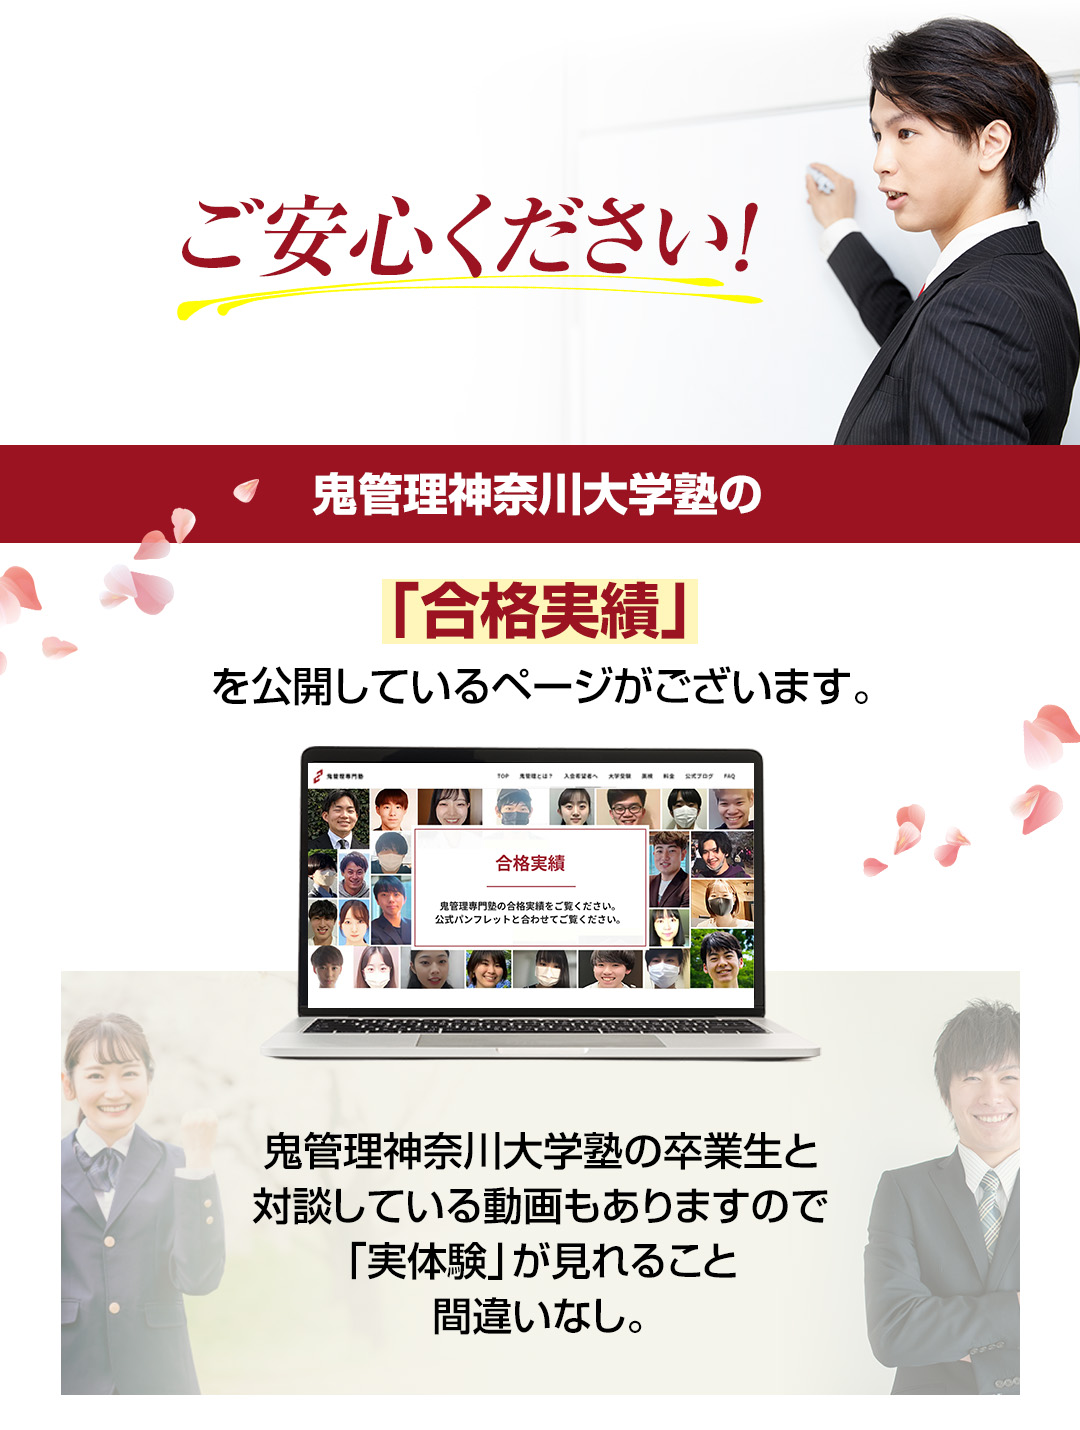 鬼管理神奈川大学塾の「合格実績」を公開しているページがございます